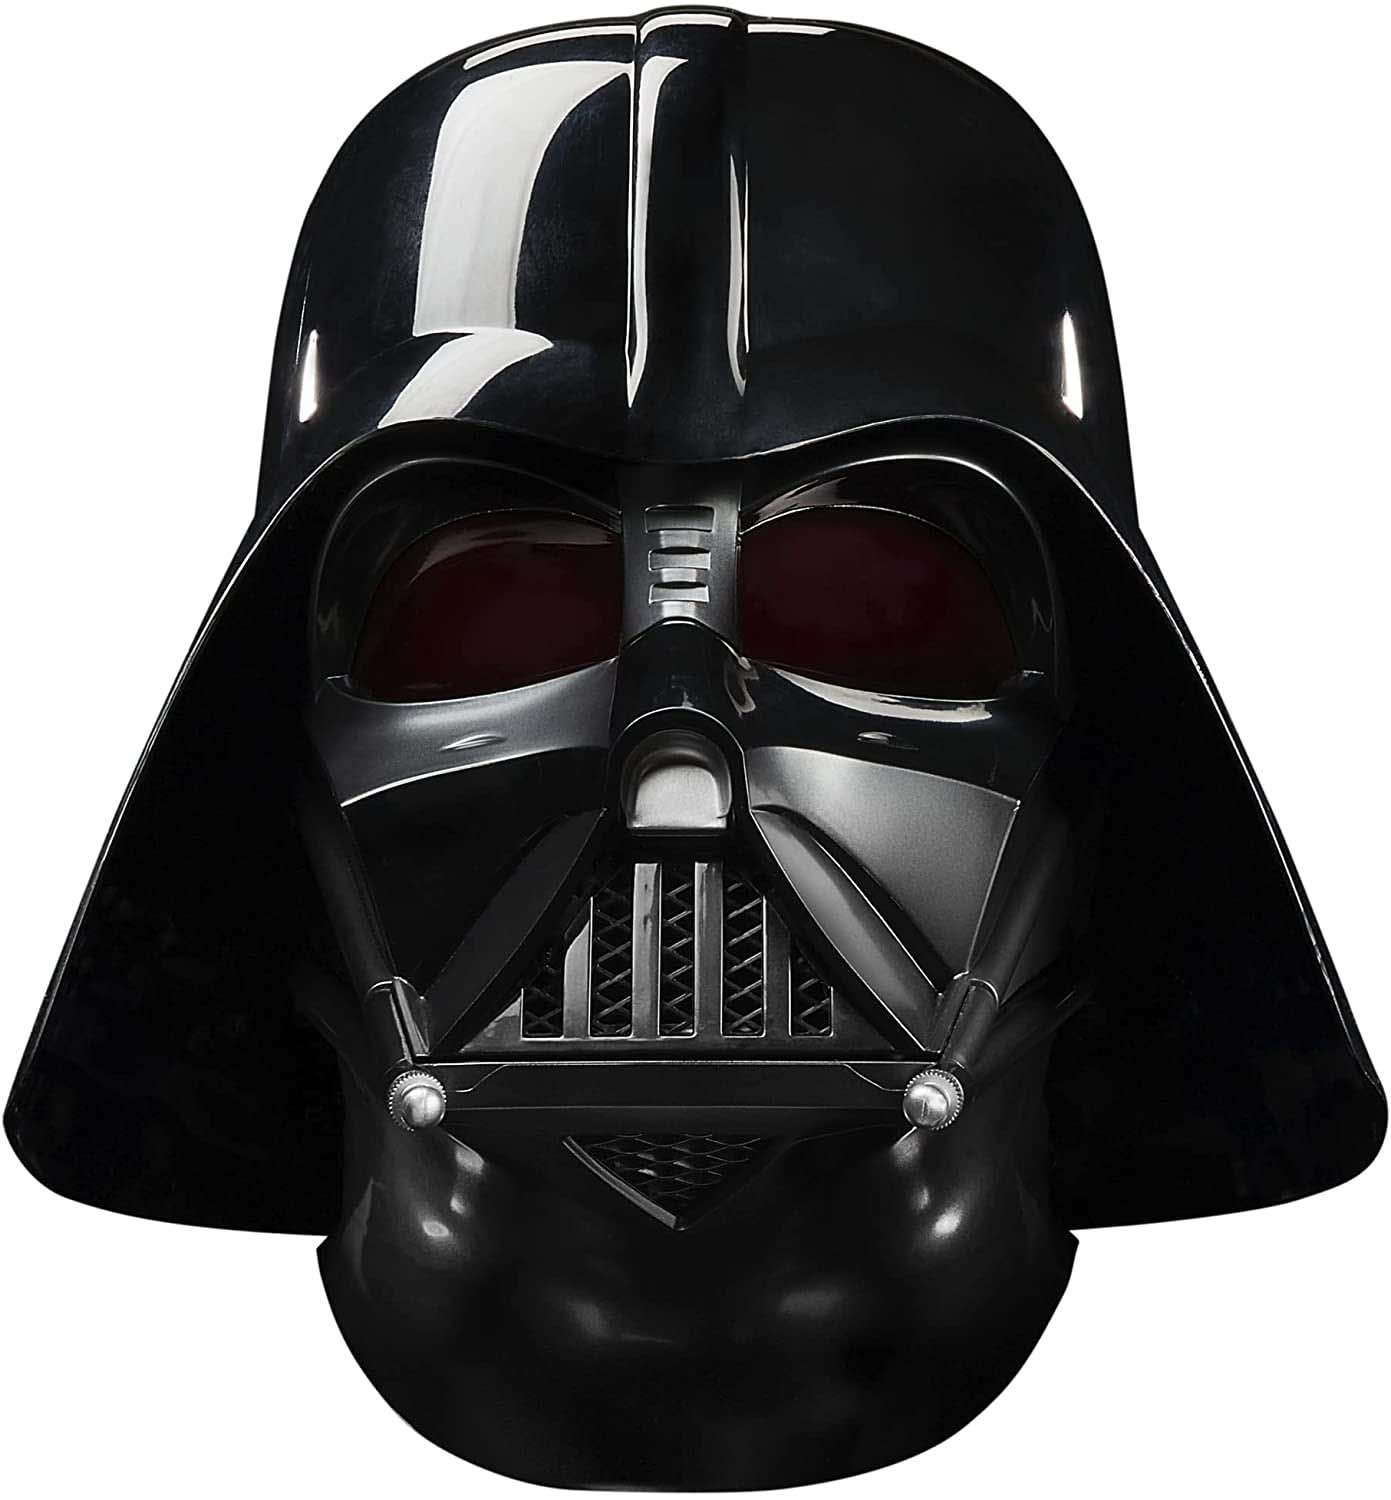 Hasbro Star Wars The Black Series Darth Vader Helmet   US